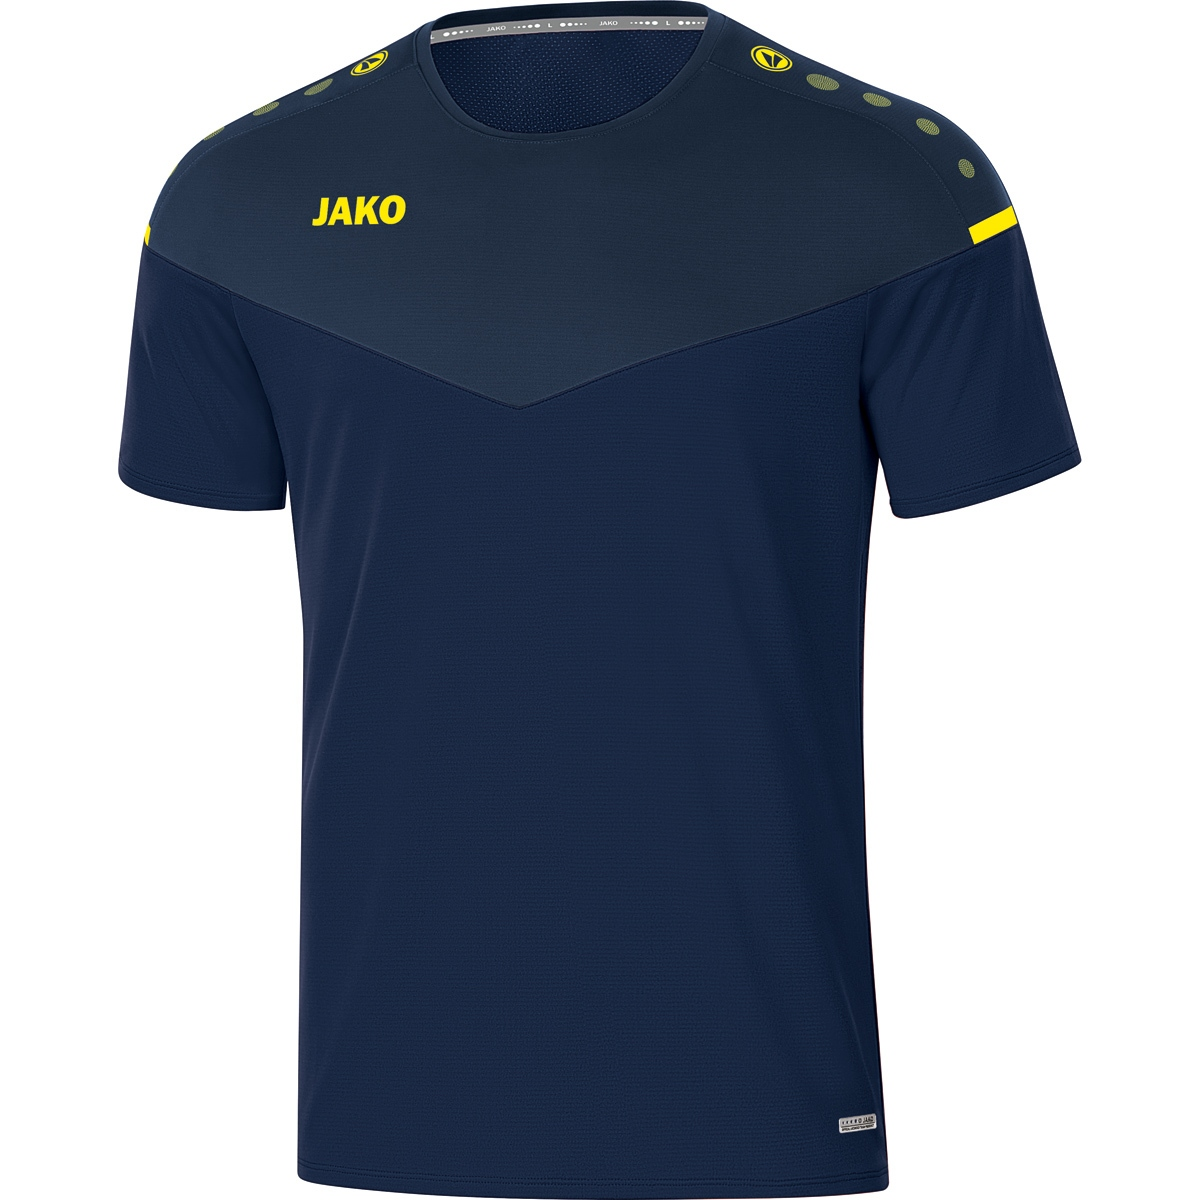 JAKO T-Shirt Gr. 2.0 6120 Champ marine/darkblue/neongelb, Herren, 3XL